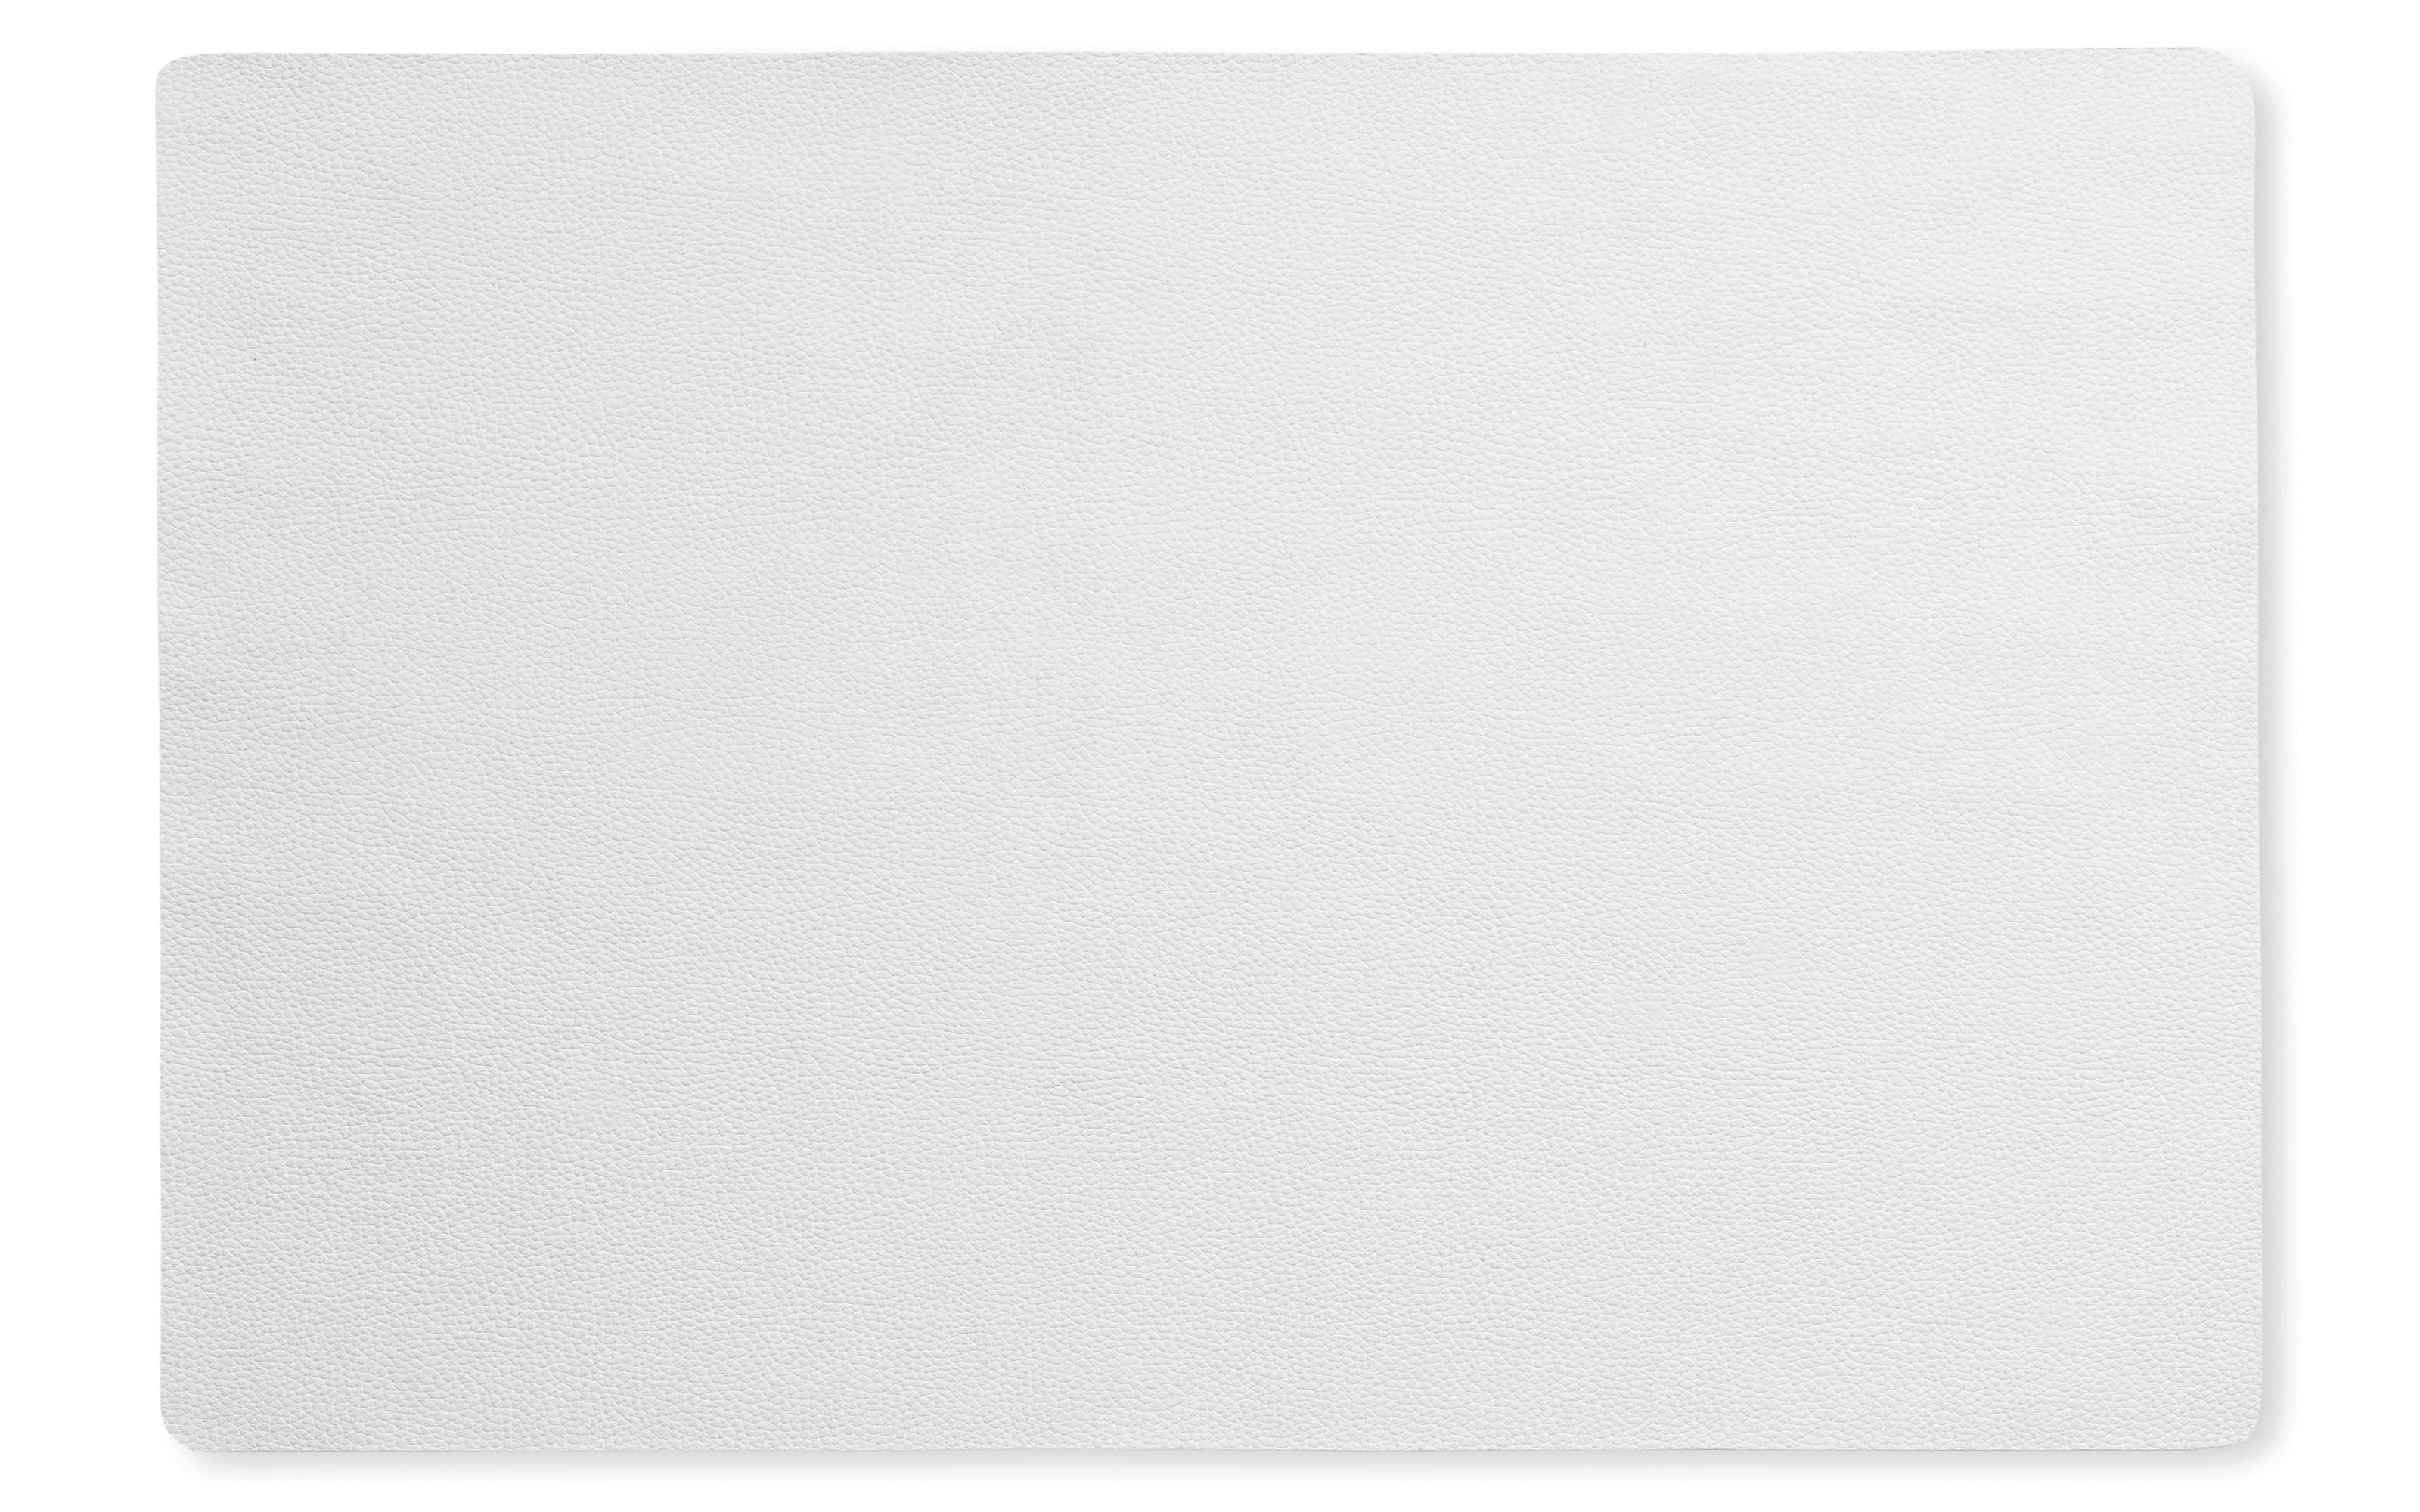 Tisch-Set Kimara in weiß, 30 x 45 cm